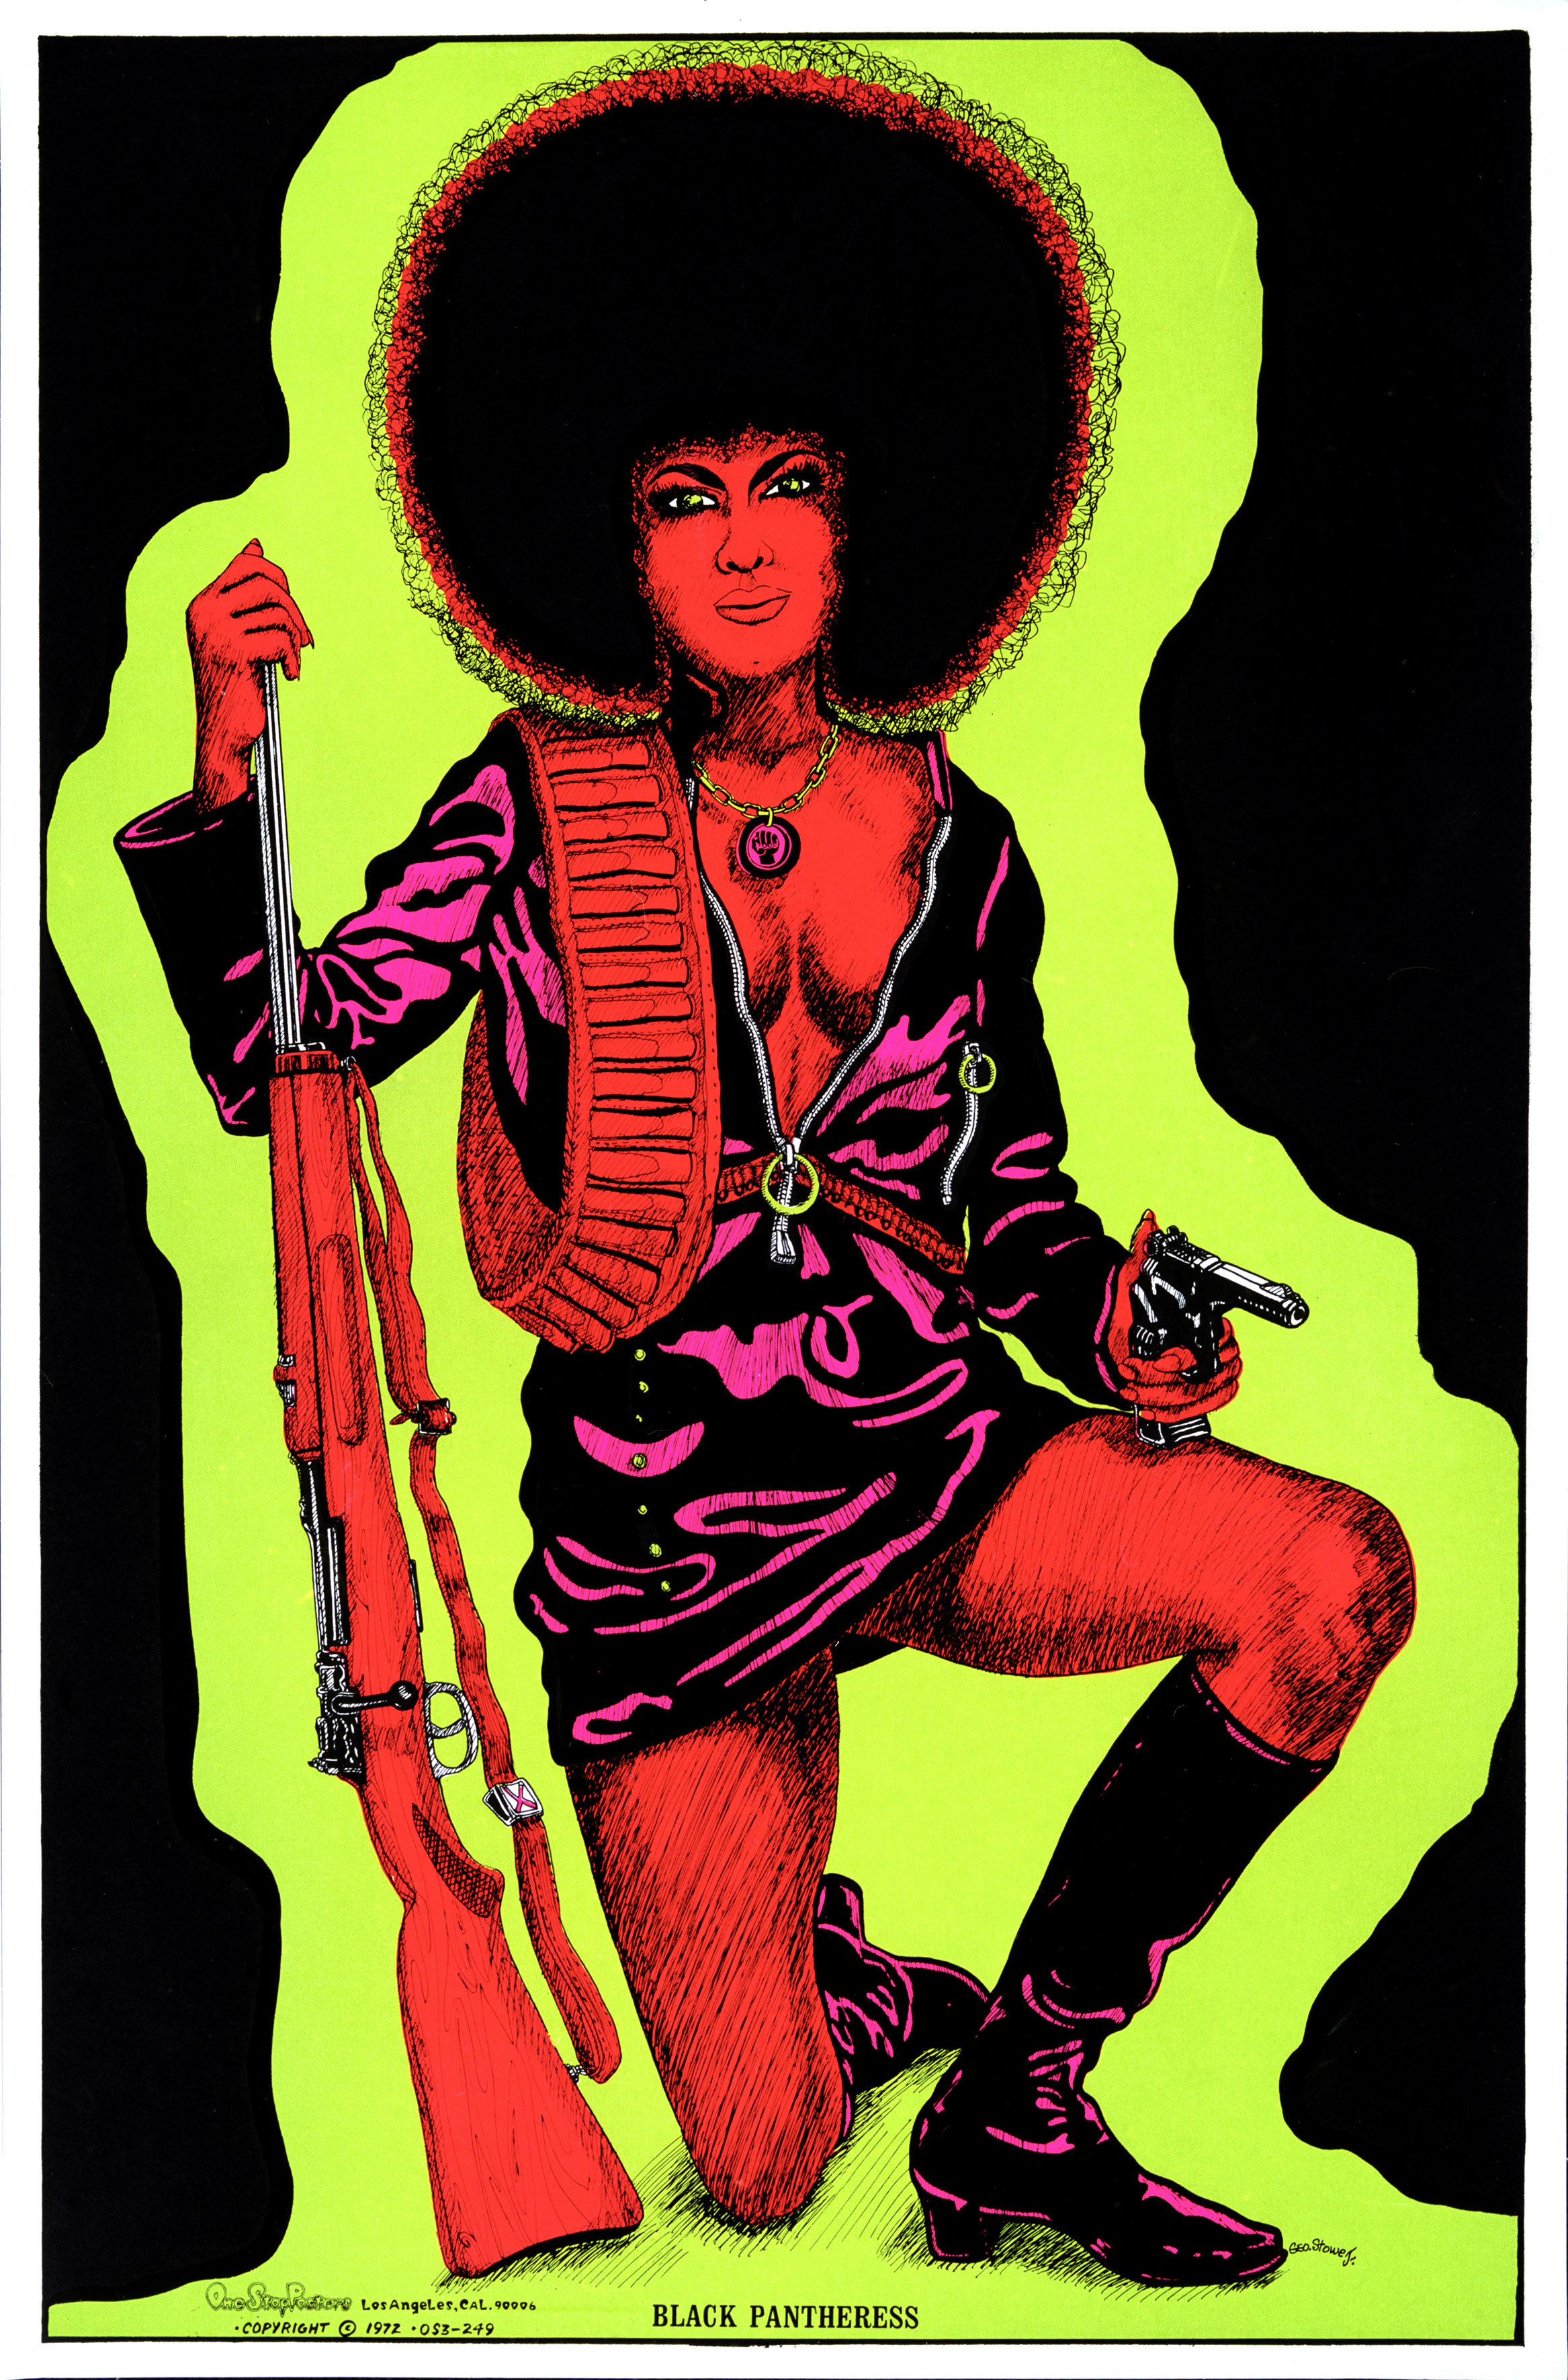 Plakat autorstwa George’a Stowe’a Jr. z podobizną Czarnej Pantery Angeli Davis, lata 70. XX w.